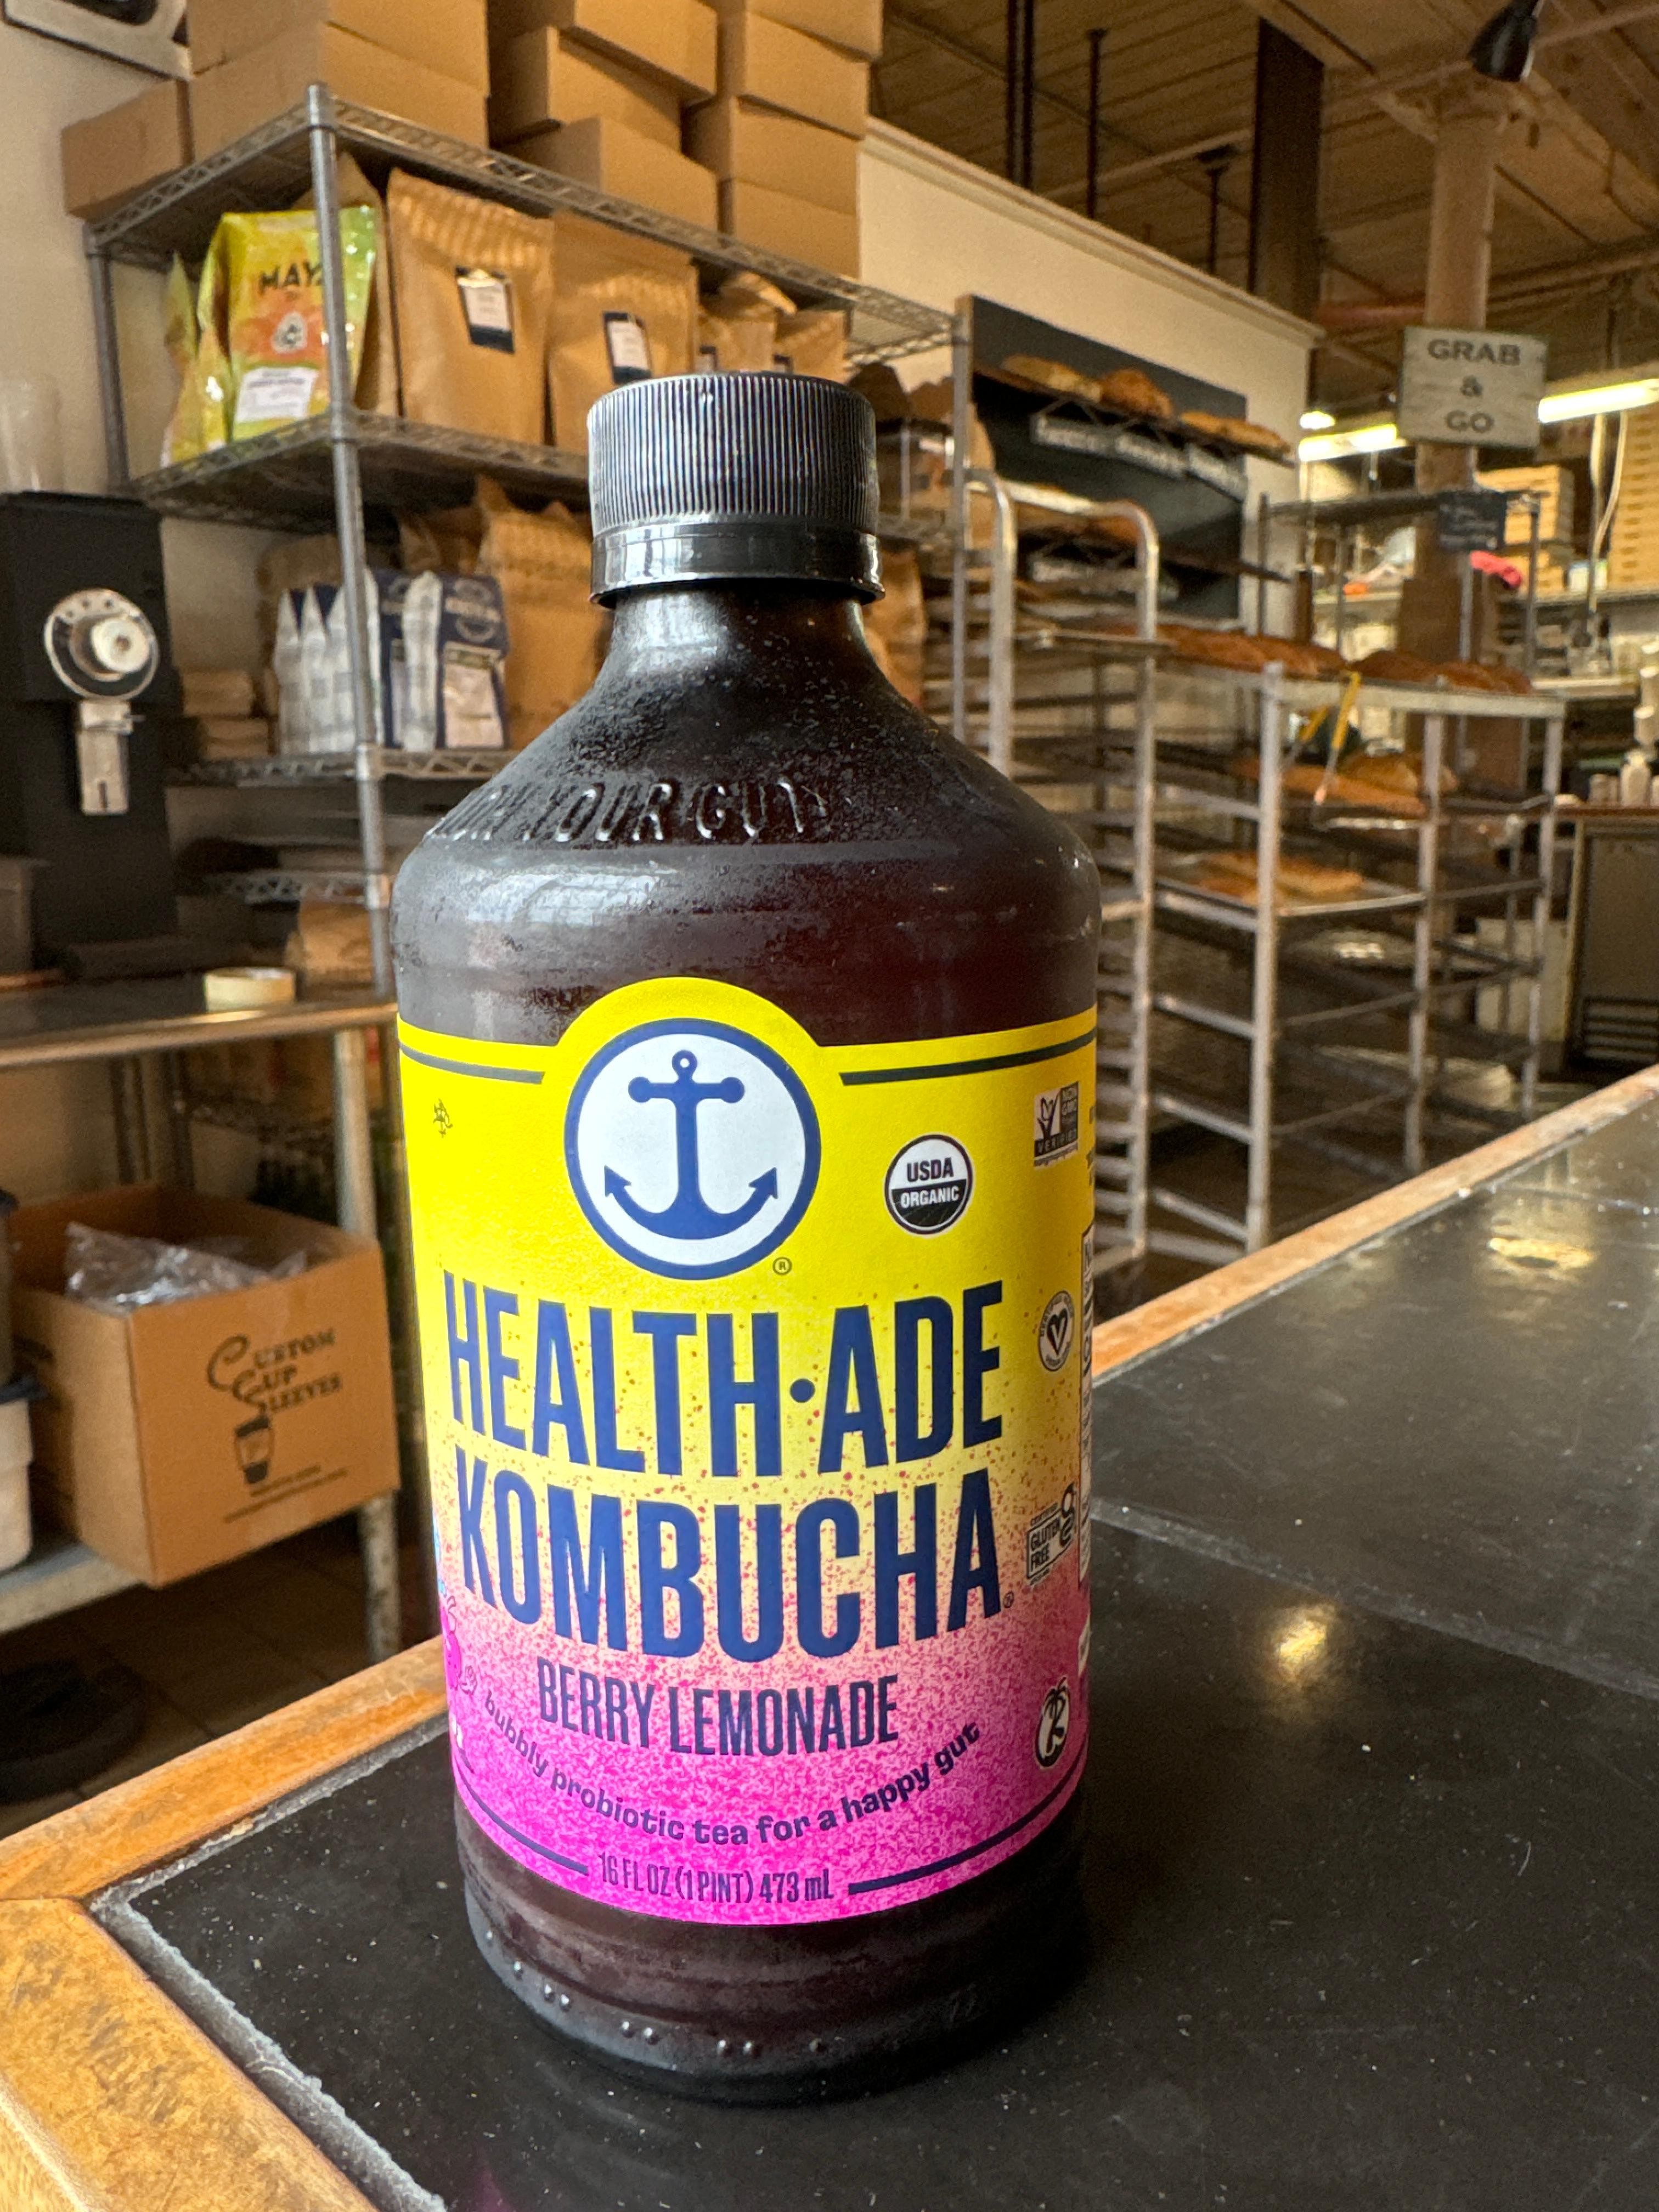 Berry Lemonade Kimbucha, Health•ade